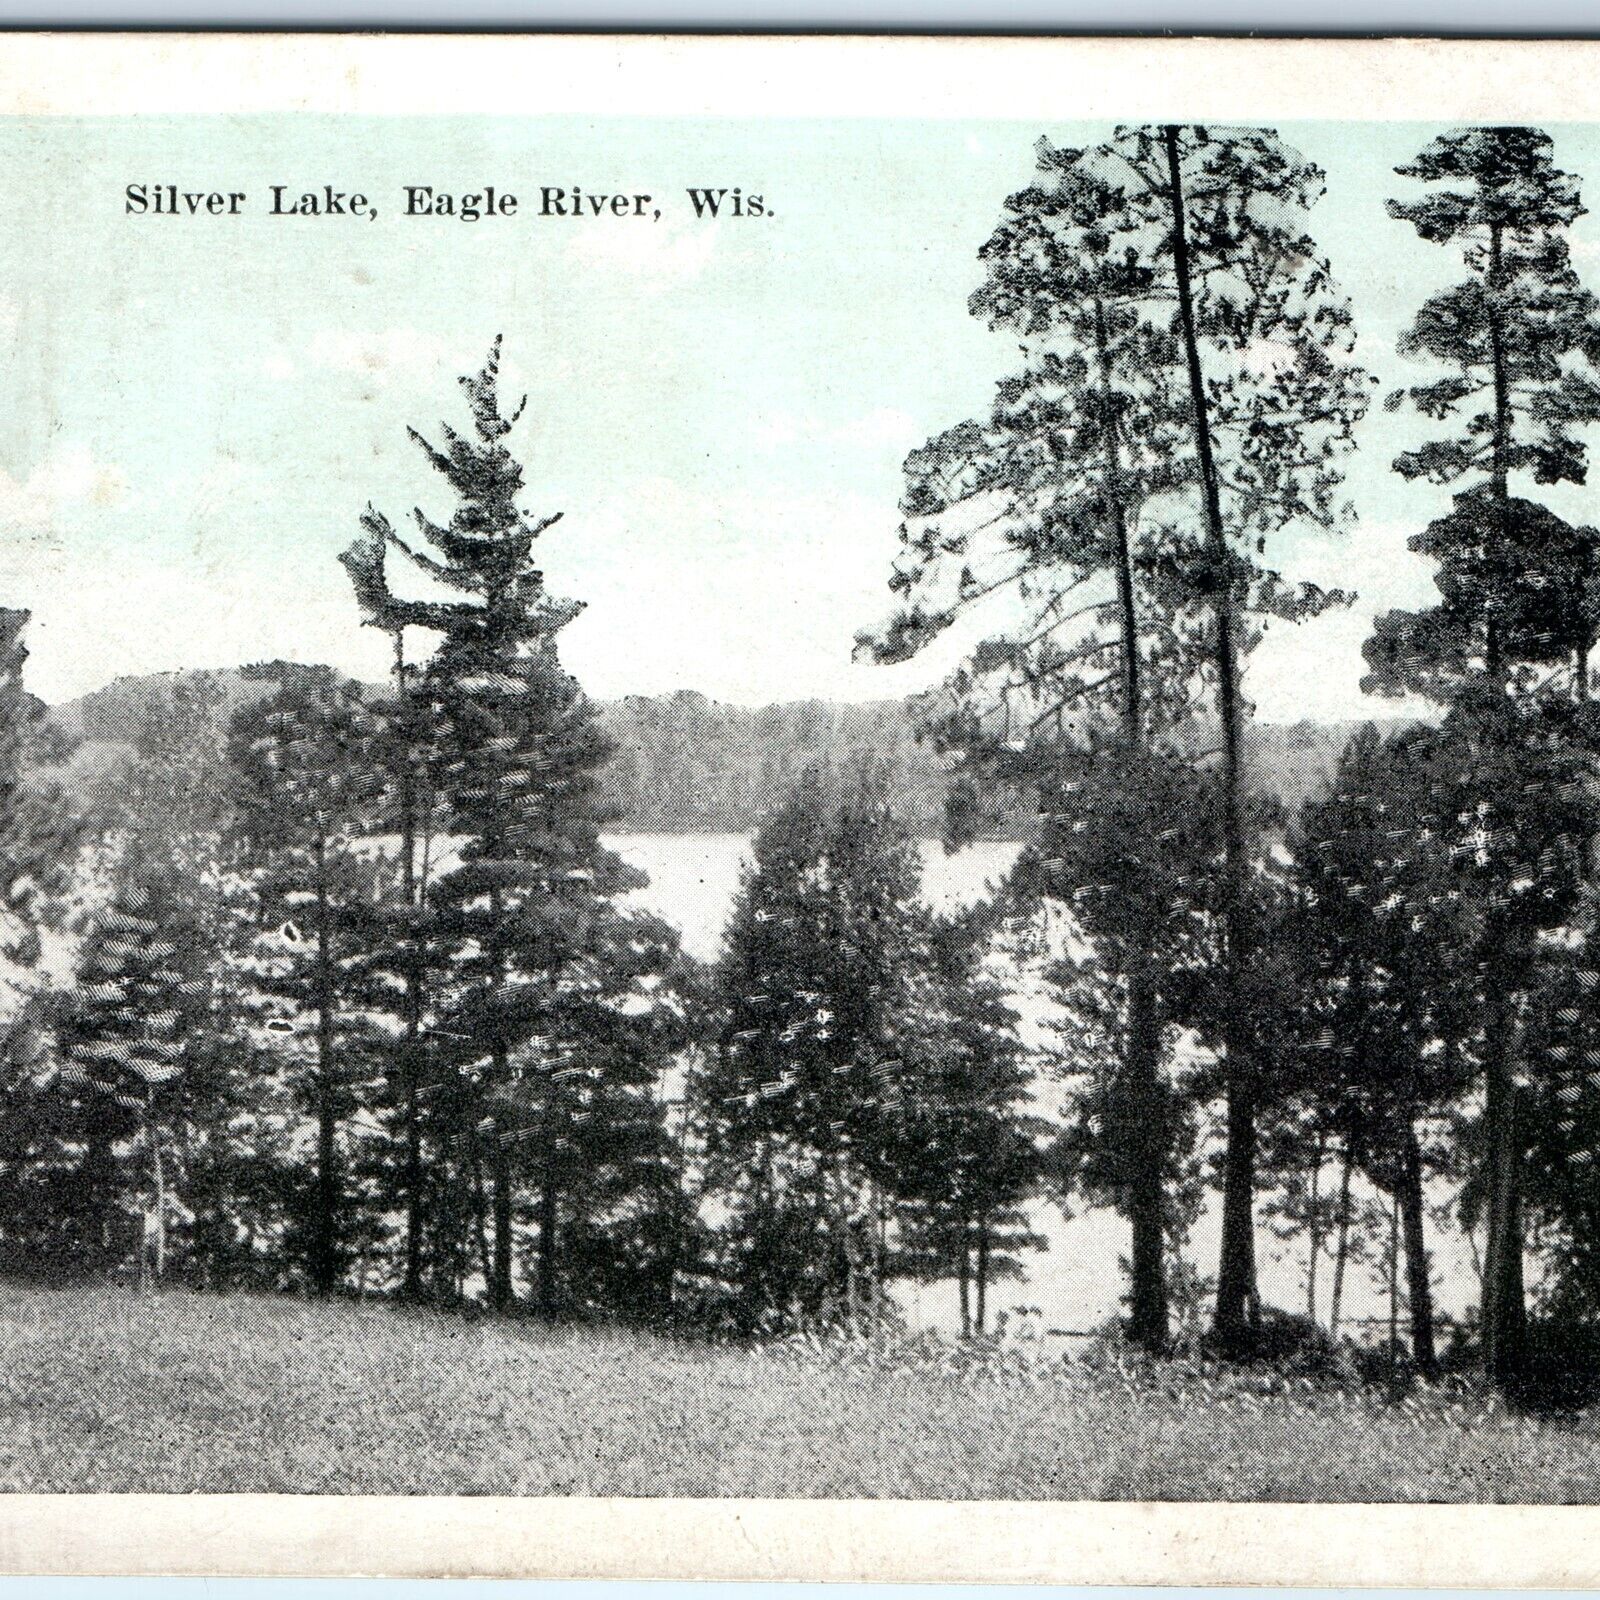 c1920s Eagle River, Wis Silver Lake Trees EC Kropp Litho Photo Postcard WI A170